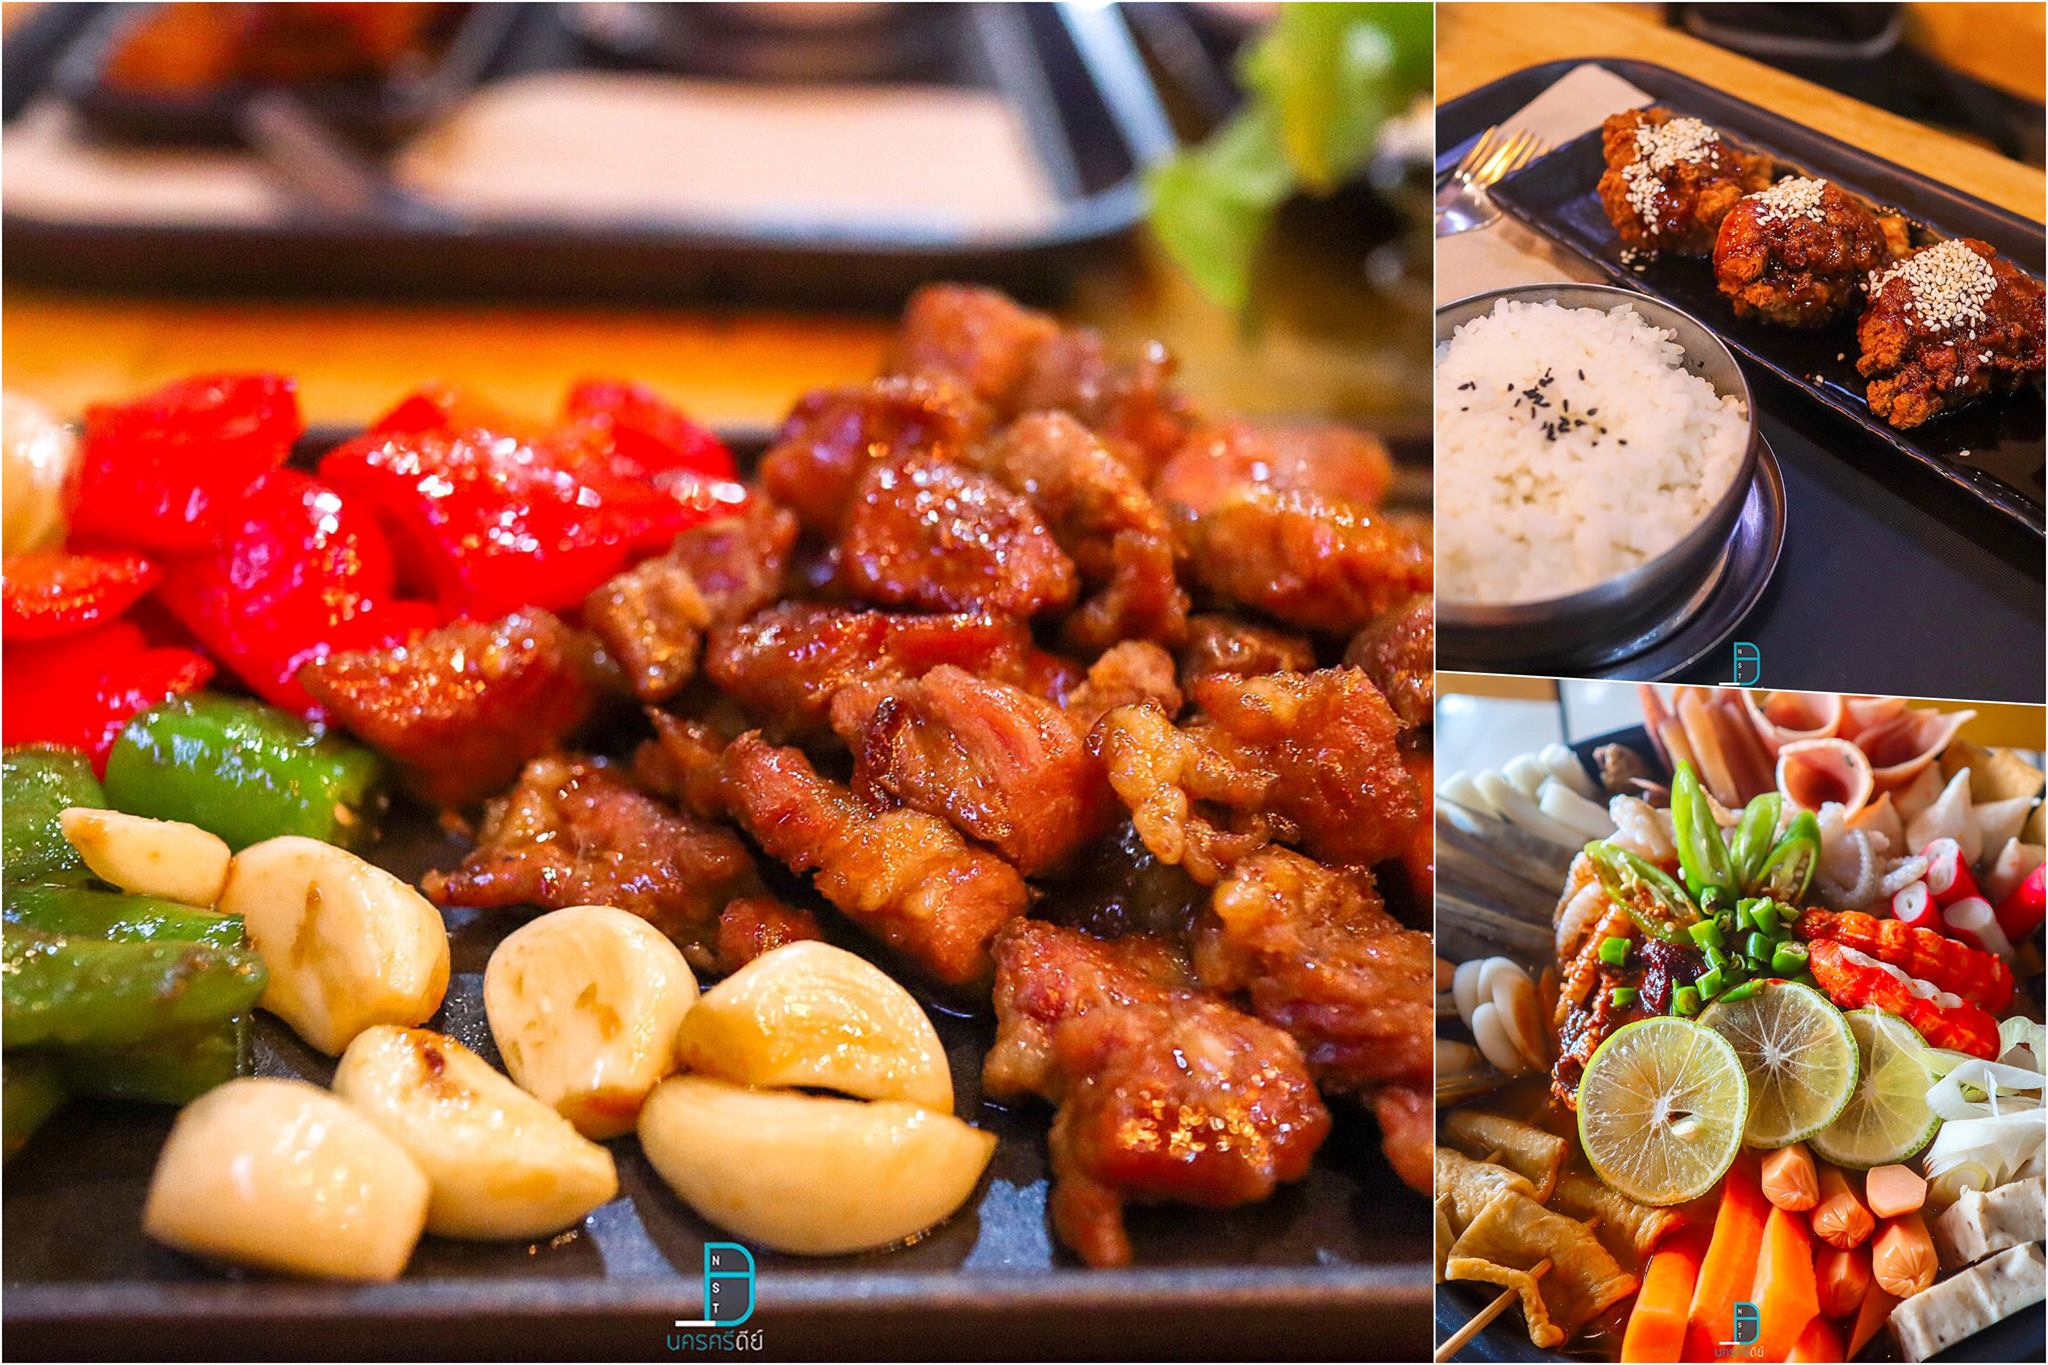  เมนูอาหารเกาหลีเด็ดๆ-Seoul-house- ของกิน,ร้านอร่อย,ร้านอาหาร,อาหารญี่ปุ่น,อาหารเกาหลี,บุฟเฟ่ต์